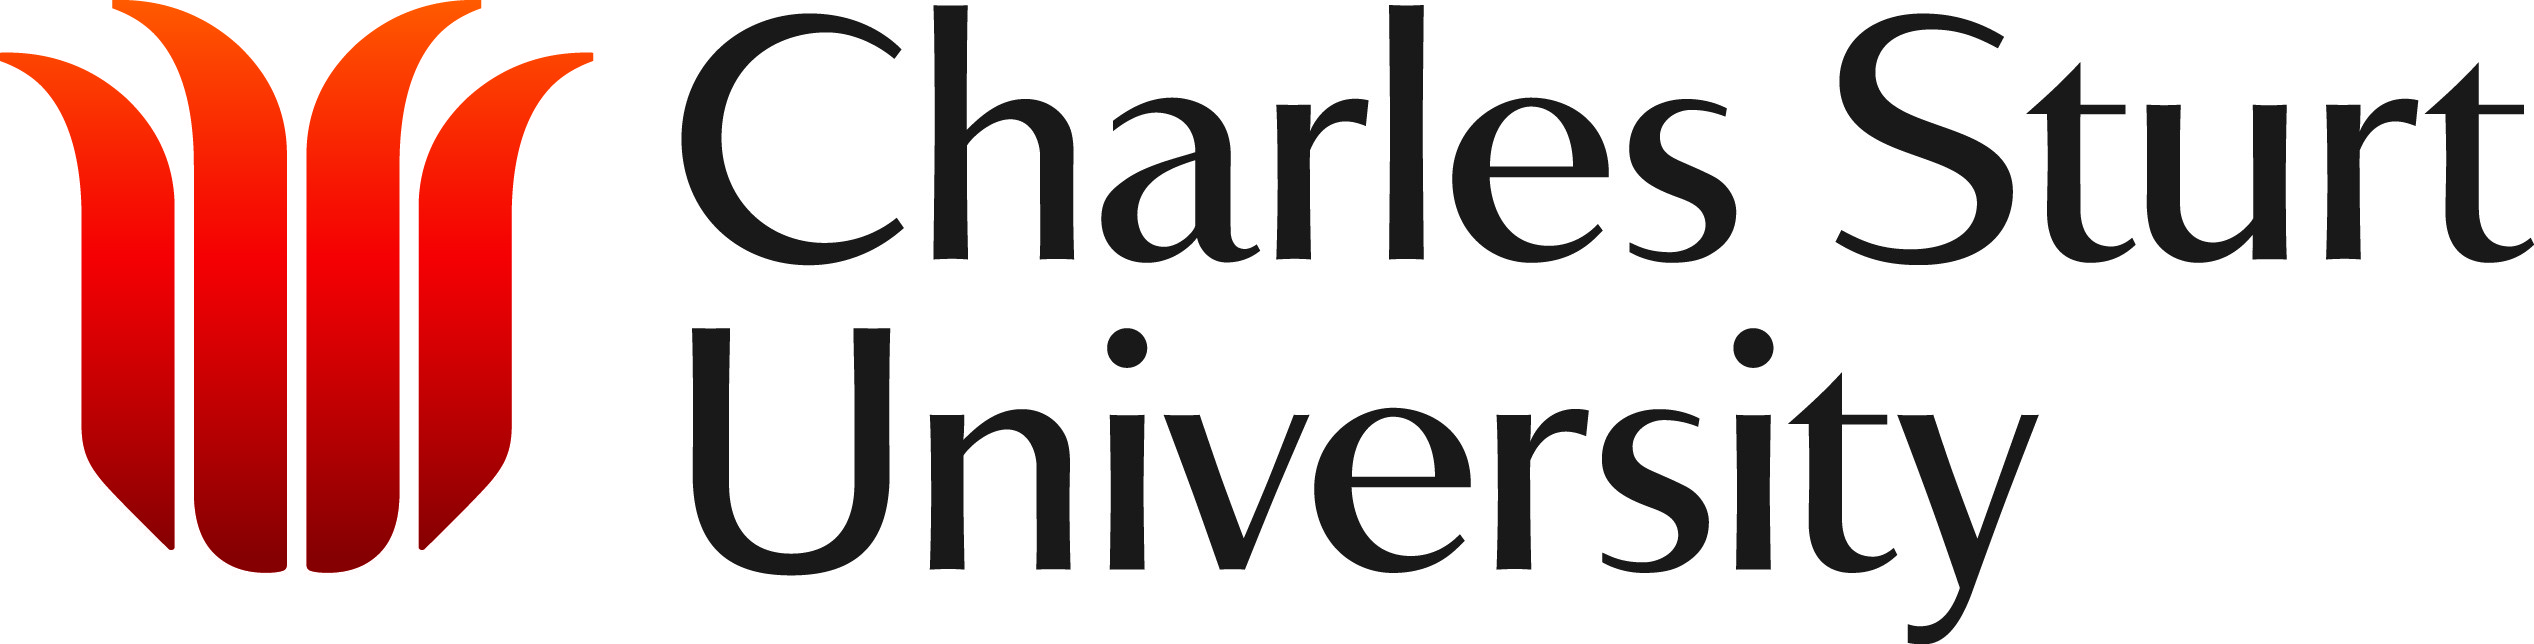 University of Charley Sturt